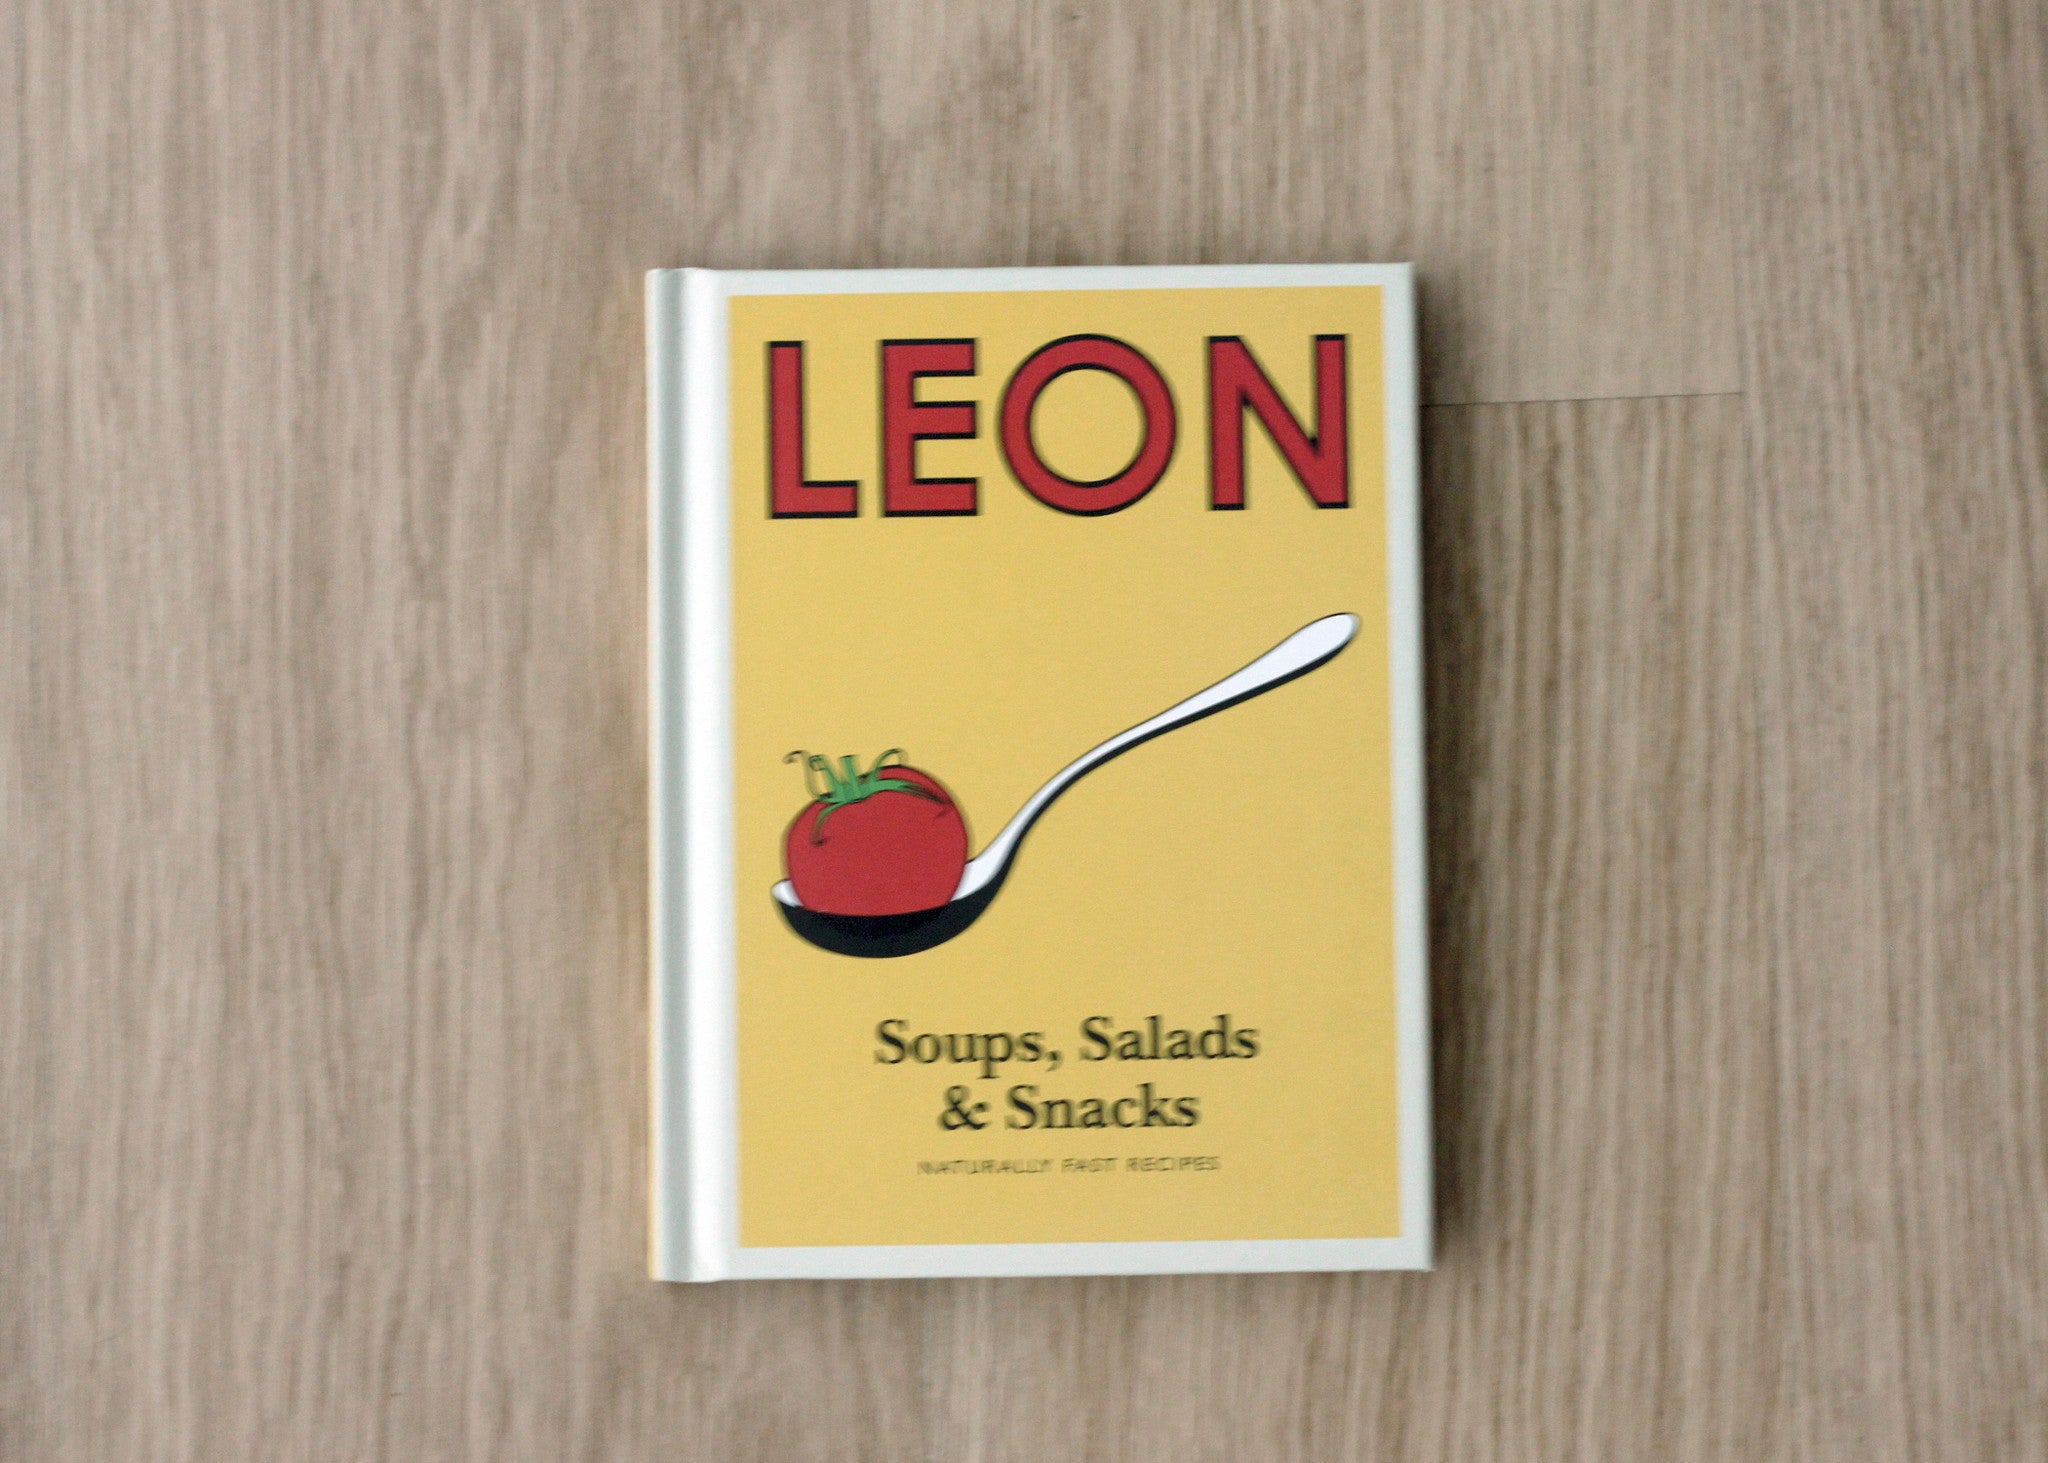 LEON: Soups, Salads, & Snacks